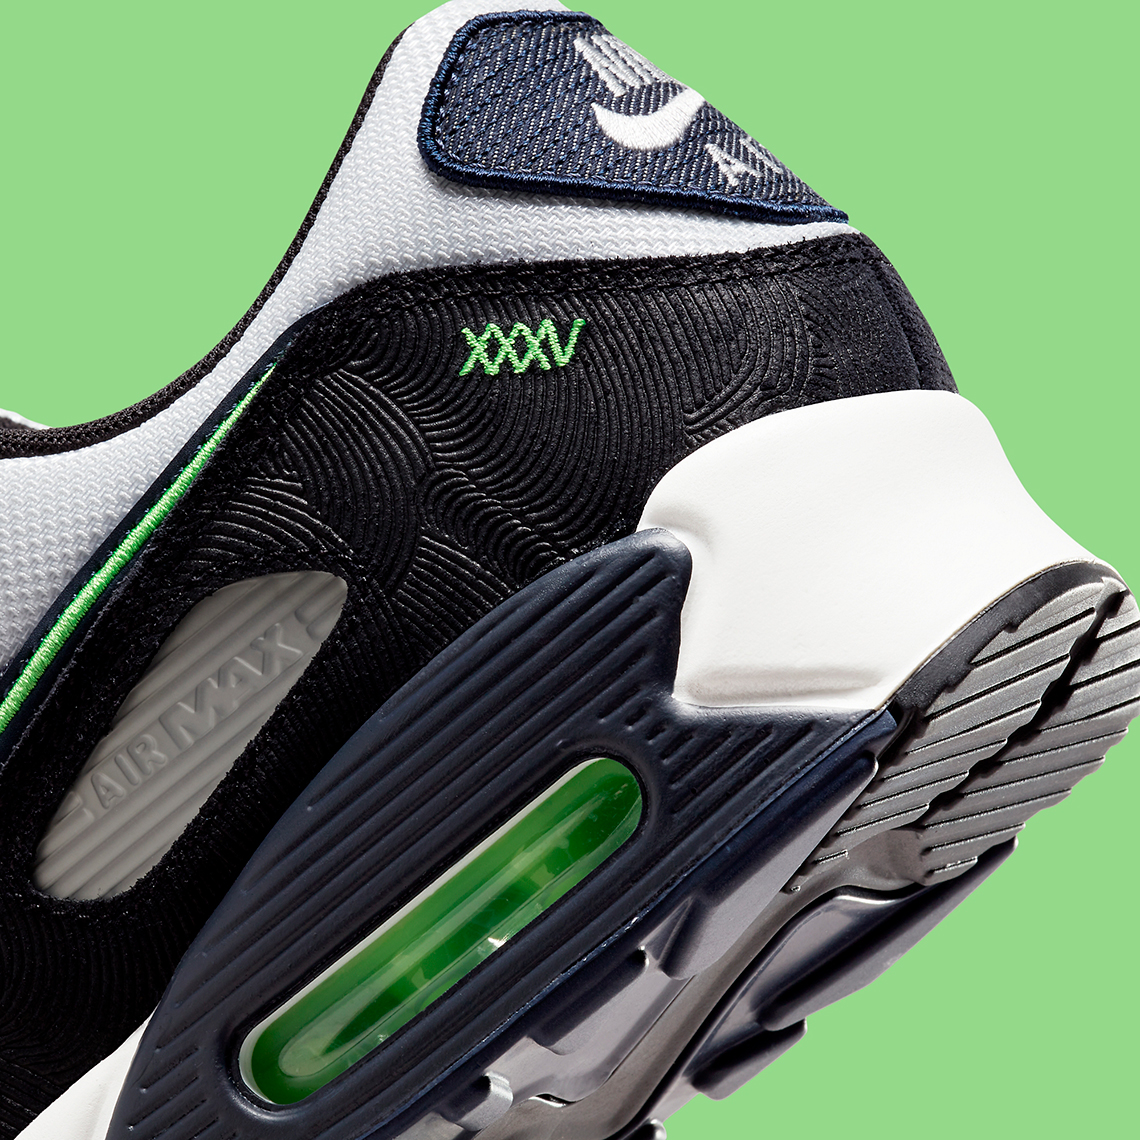 Nike Air Max 90 Scream Green DN4155-001 | SneakerNews.com